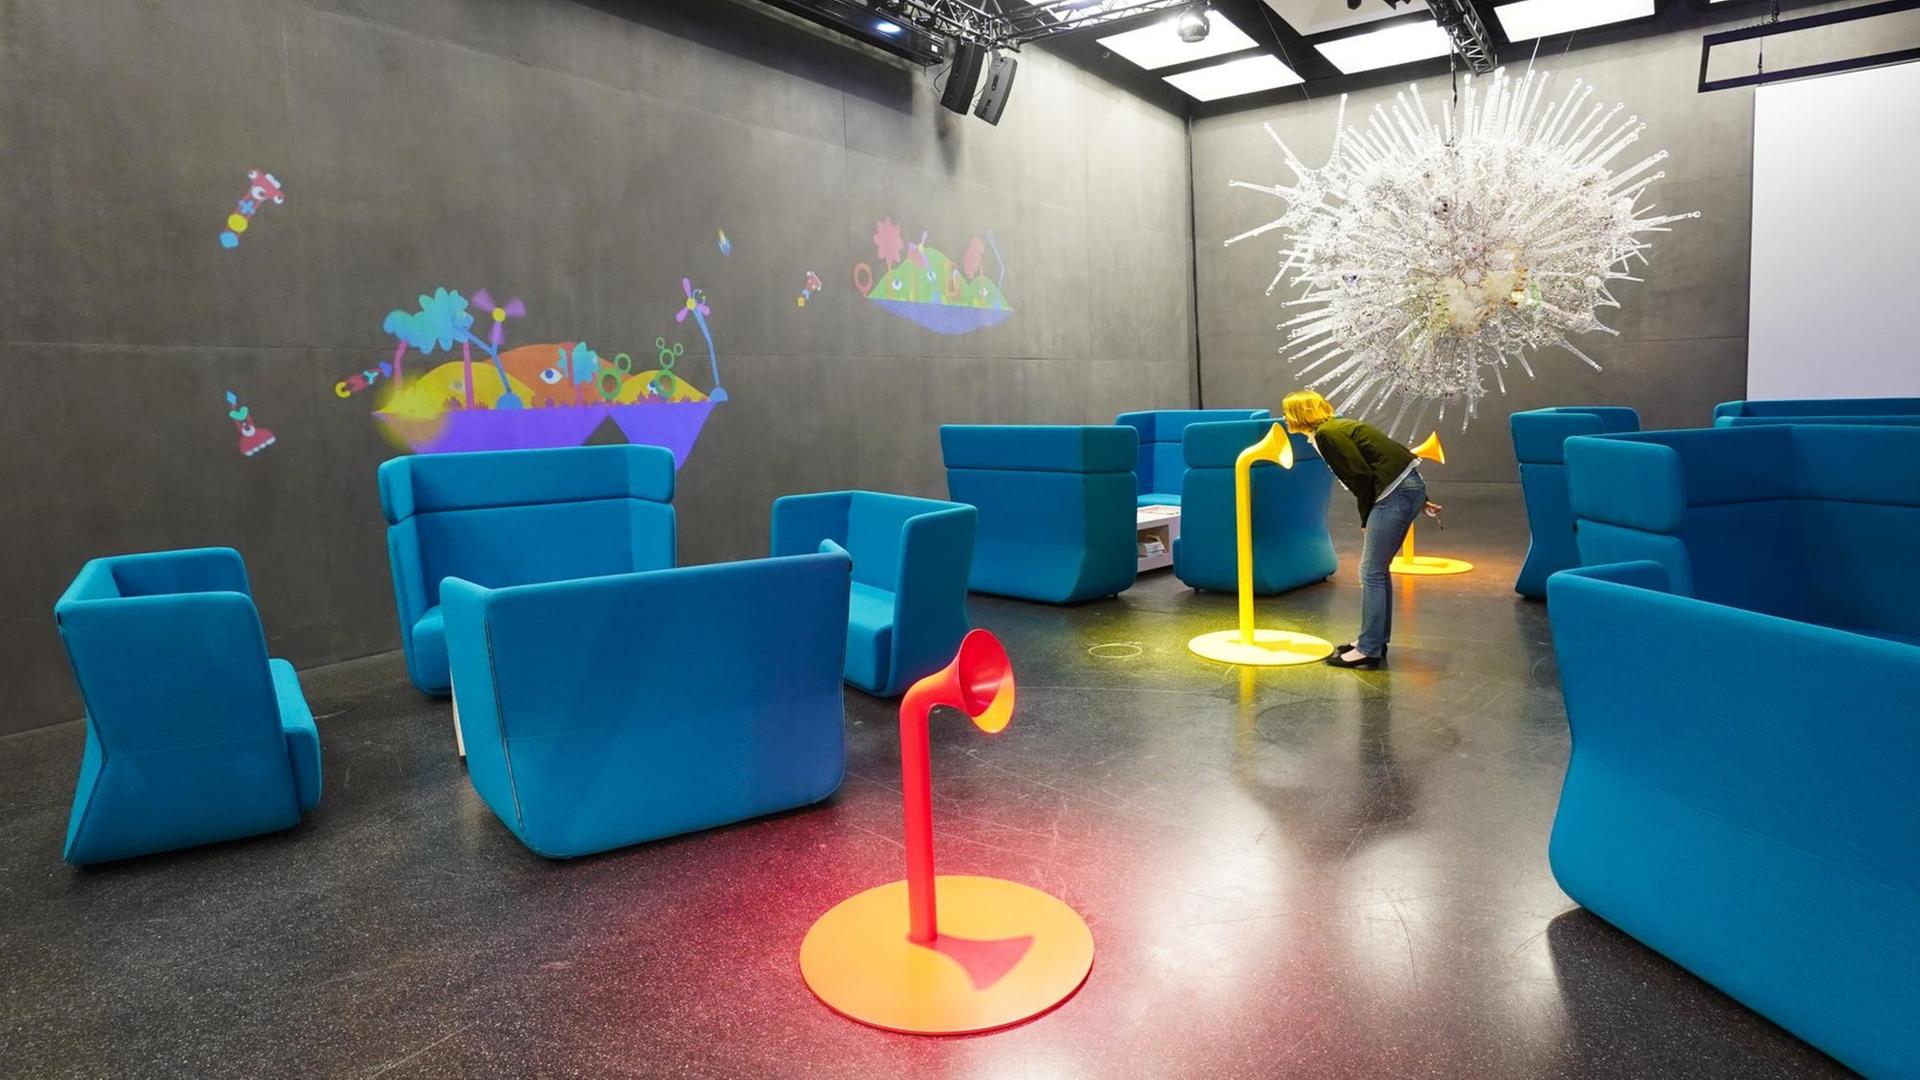 Blick in das Ausstellungs-, Veranstaltungs- und Experimentierforum Futurium zeigt farbenfrohe Möbel und Wandflächen, die zum Entdecken einladen.